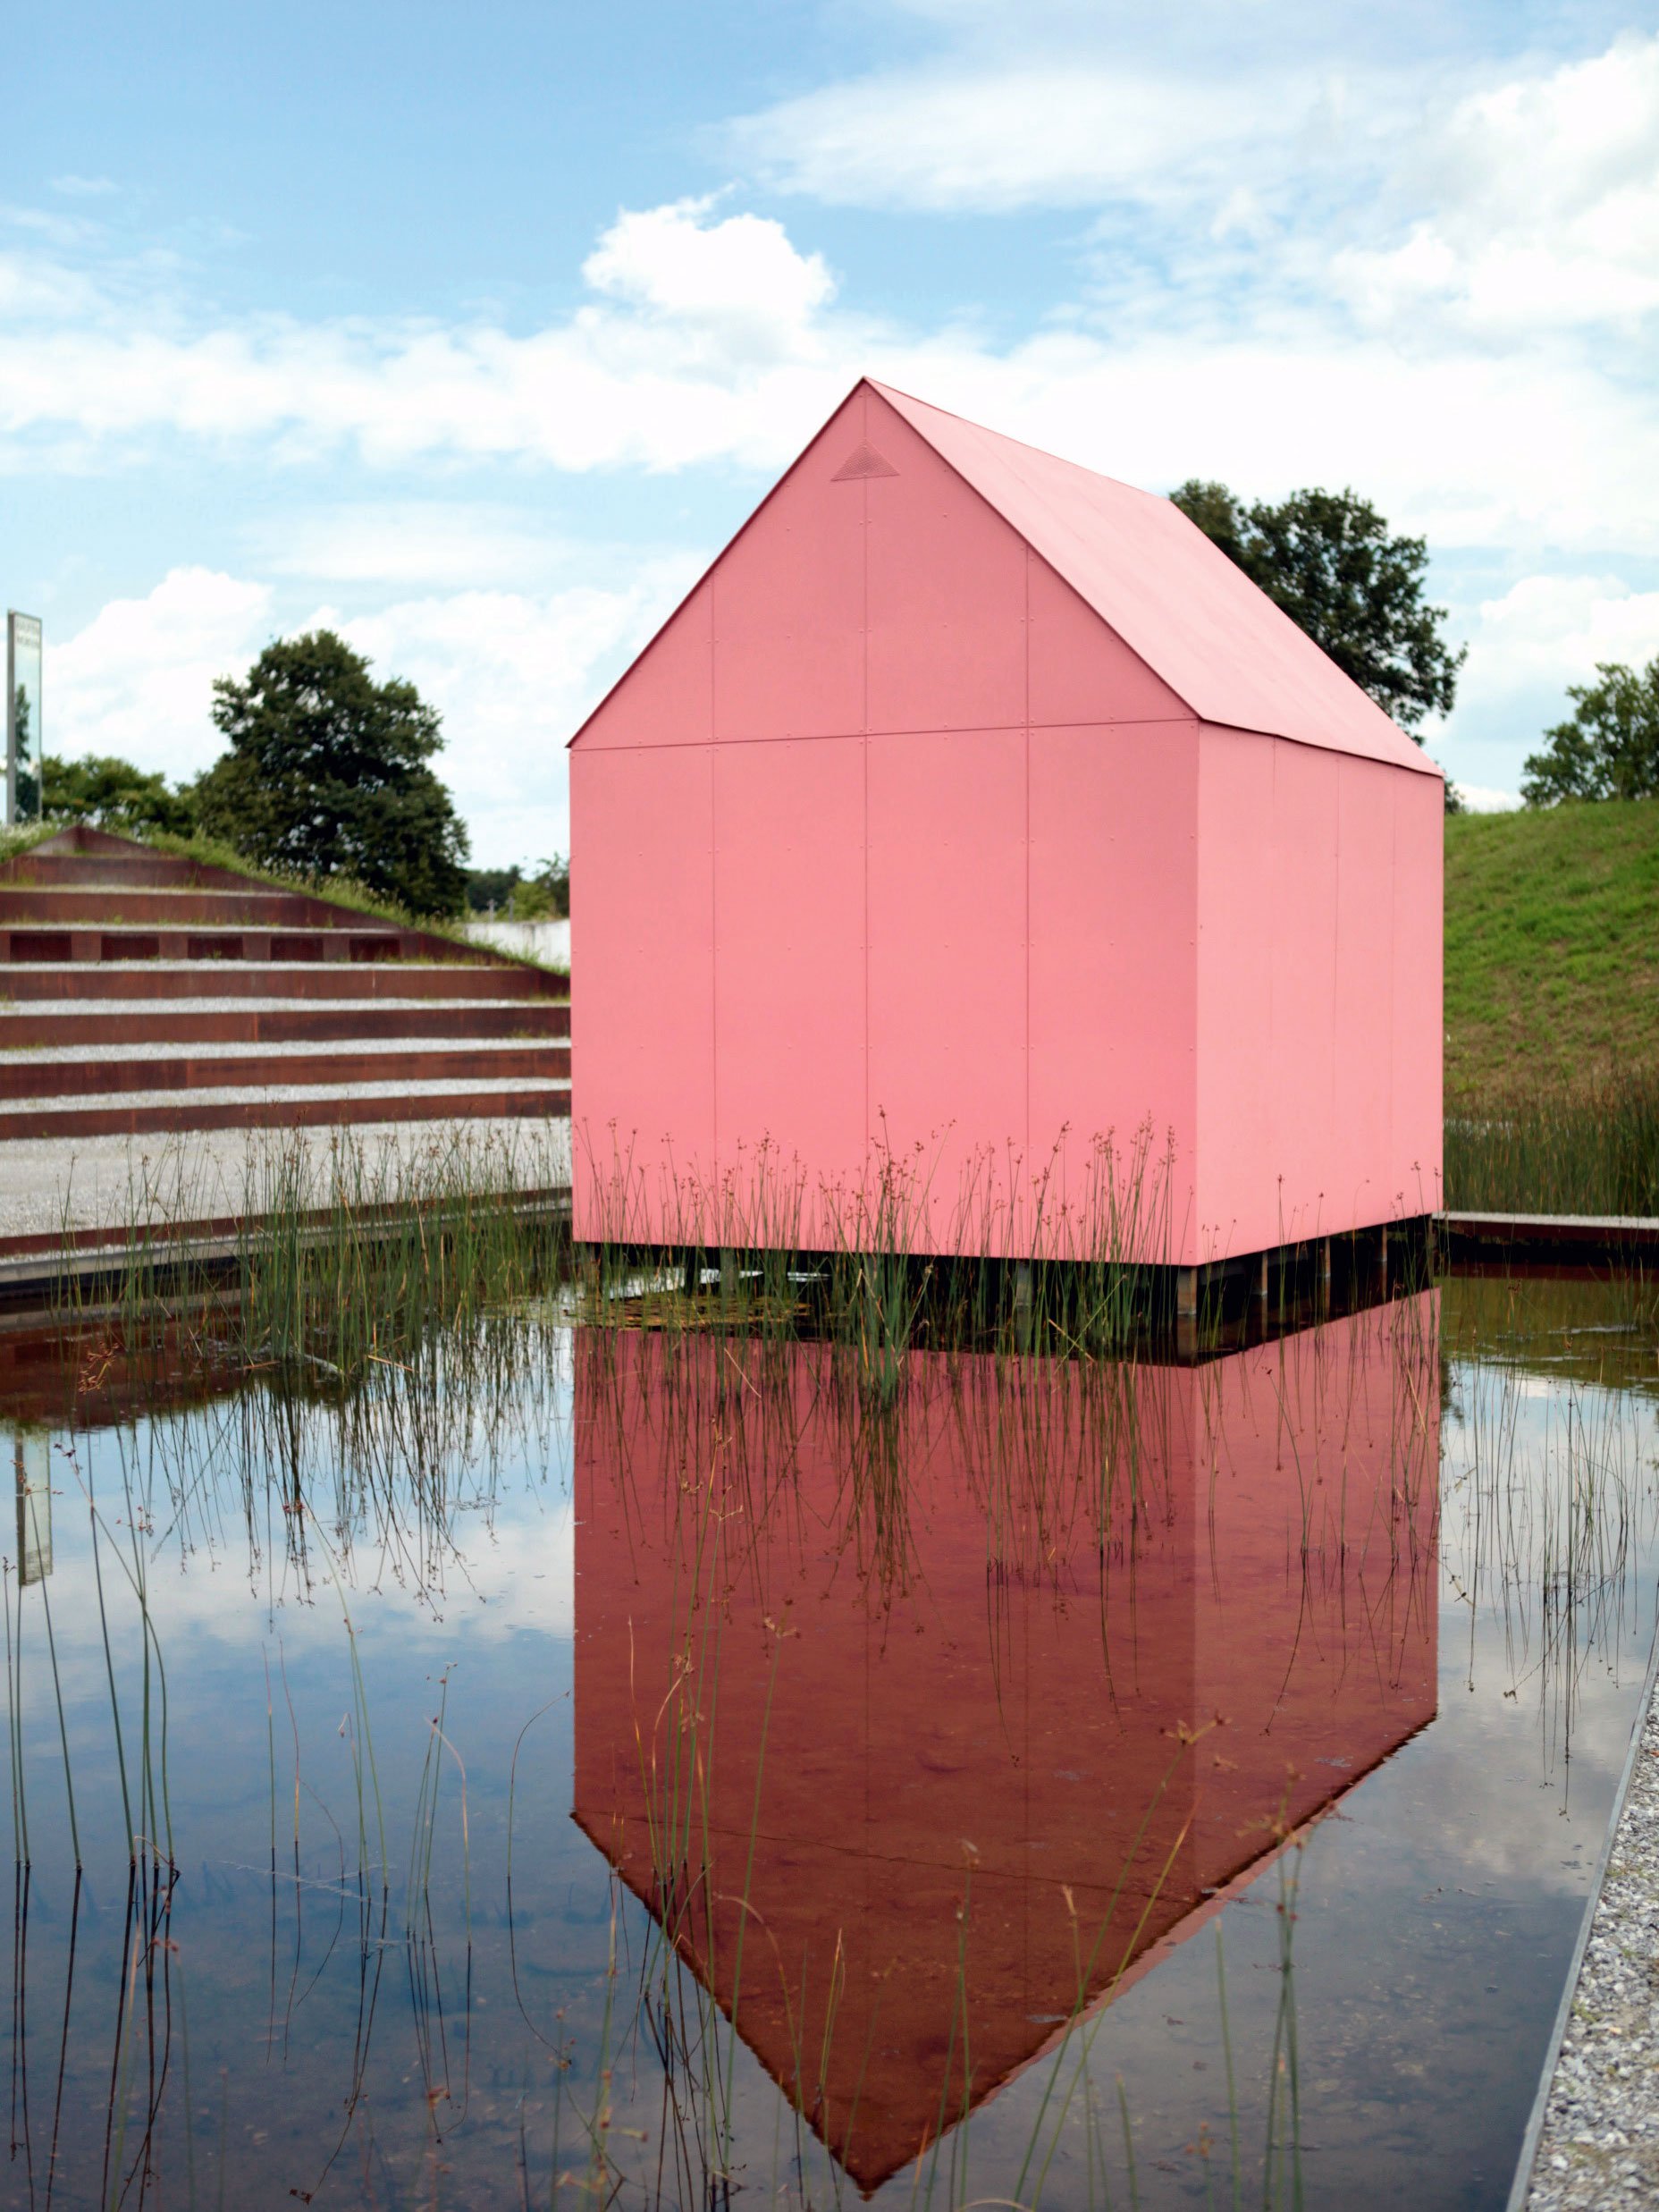 Wassermusik: Eva & Adele, das Künstlerinnenpaar, gaben sich im Österreichischen Skulpturenpark mit »Watermusic«, 2003/04, pink und häuslich. 